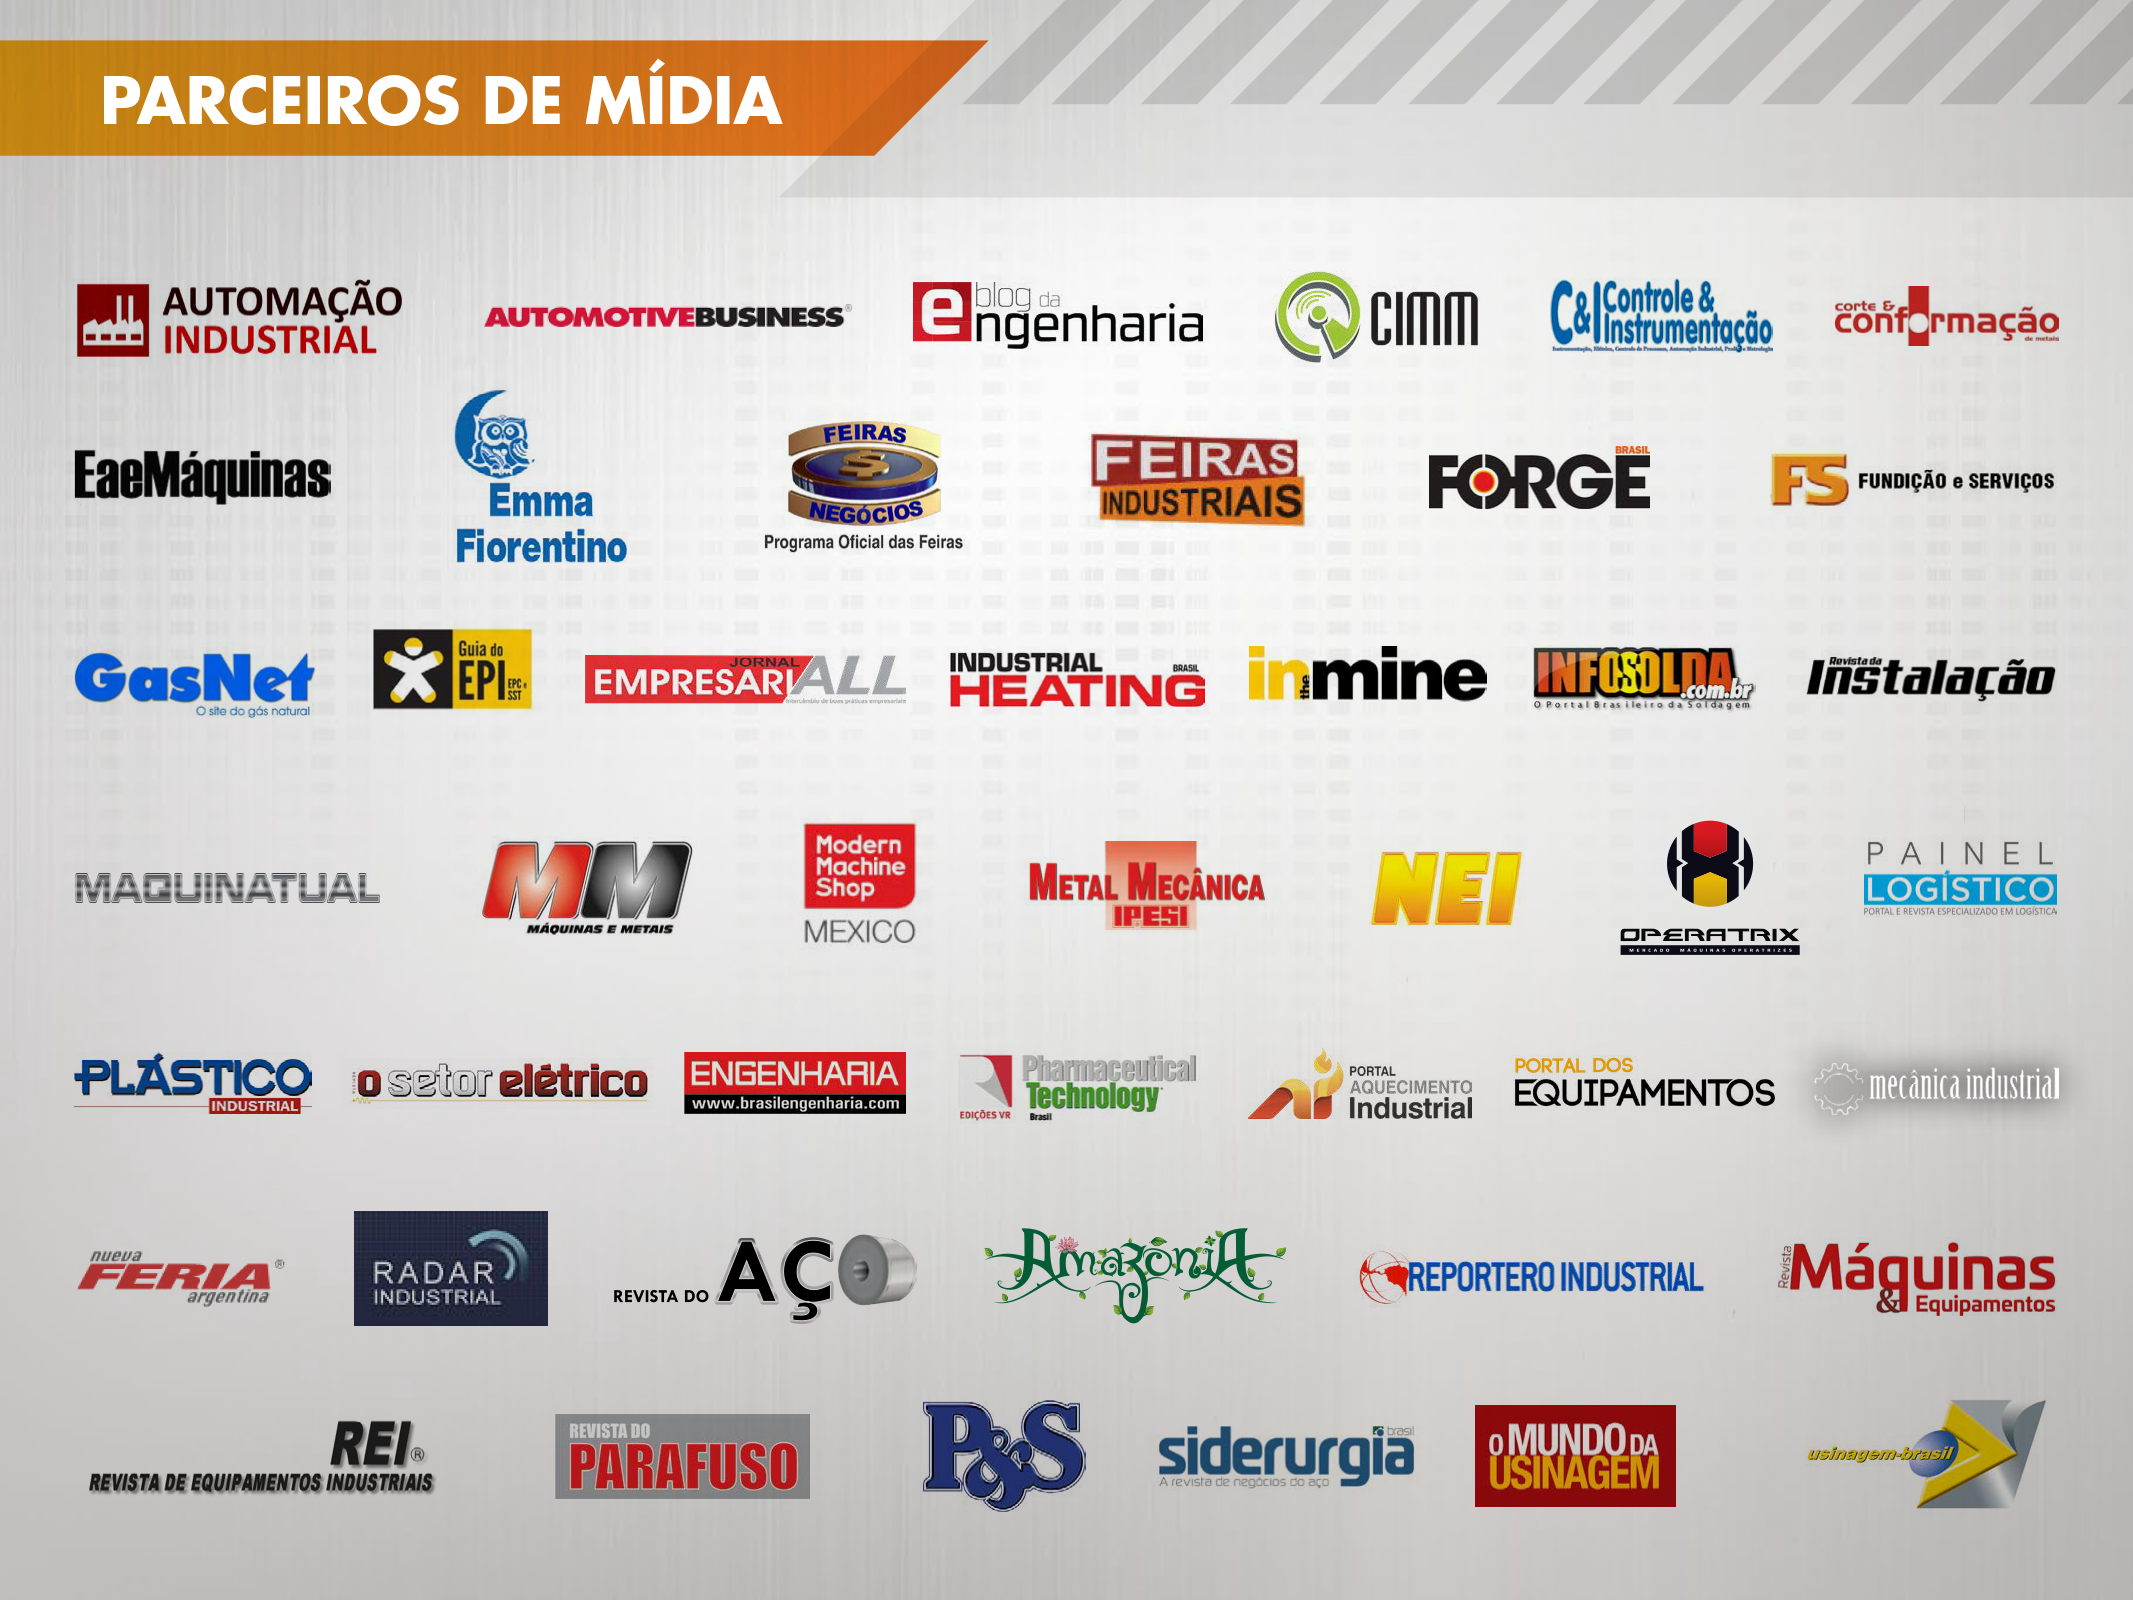 巴西圣保羅機械工業展覽會FEIMEC